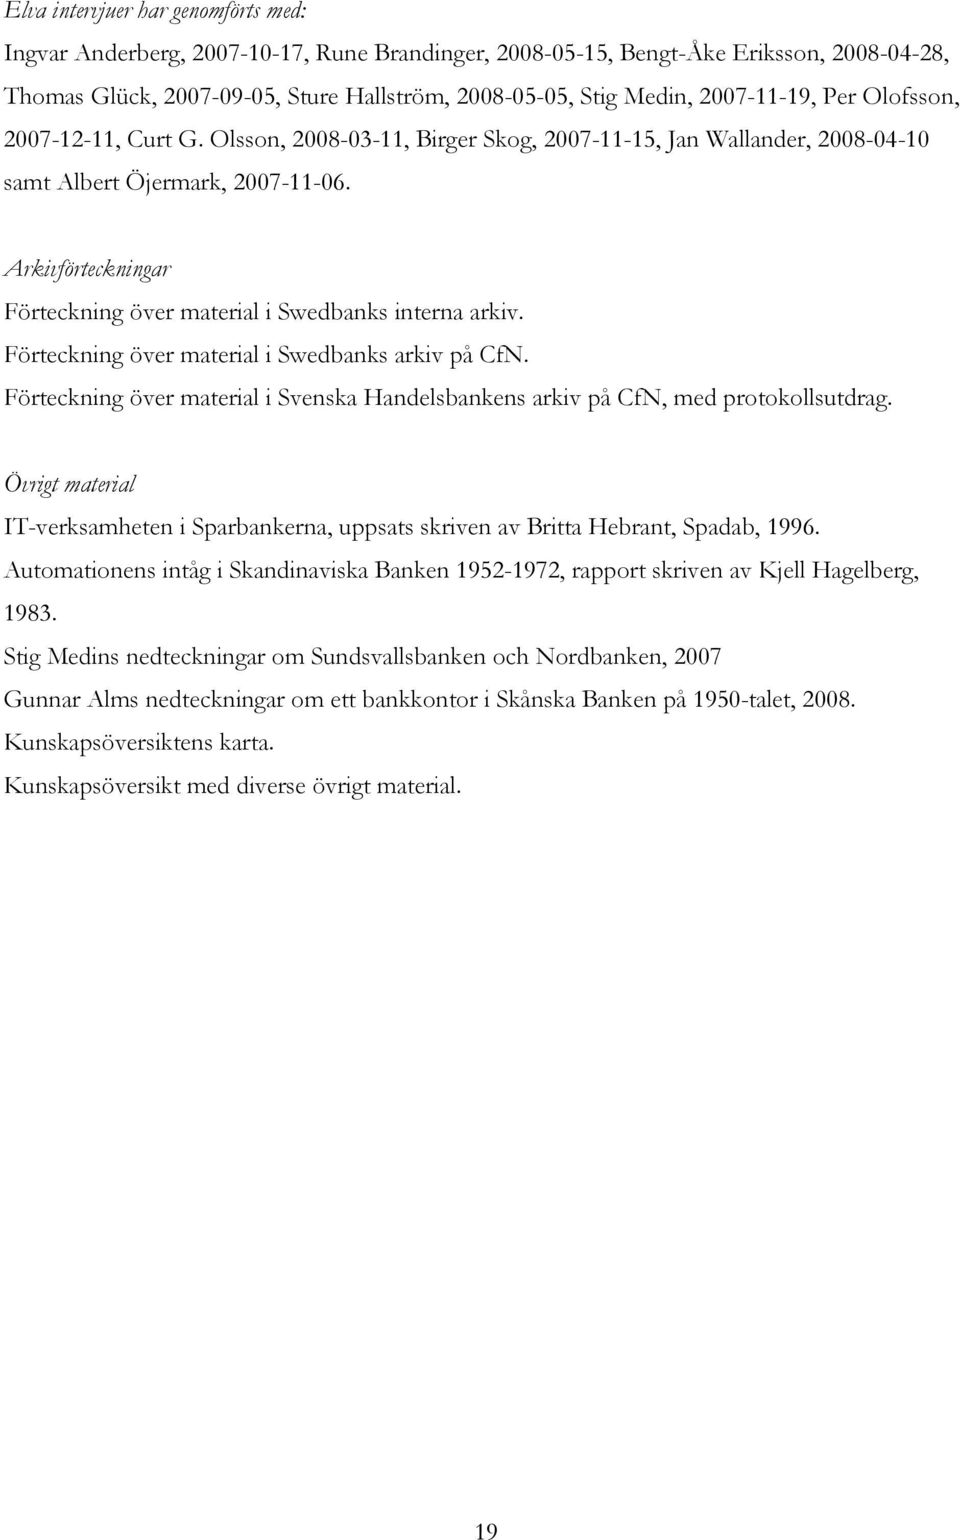 Arkivförteckningar Förteckning över material i Swedbanks interna arkiv. Förteckning över material i Swedbanks arkiv på CfN.